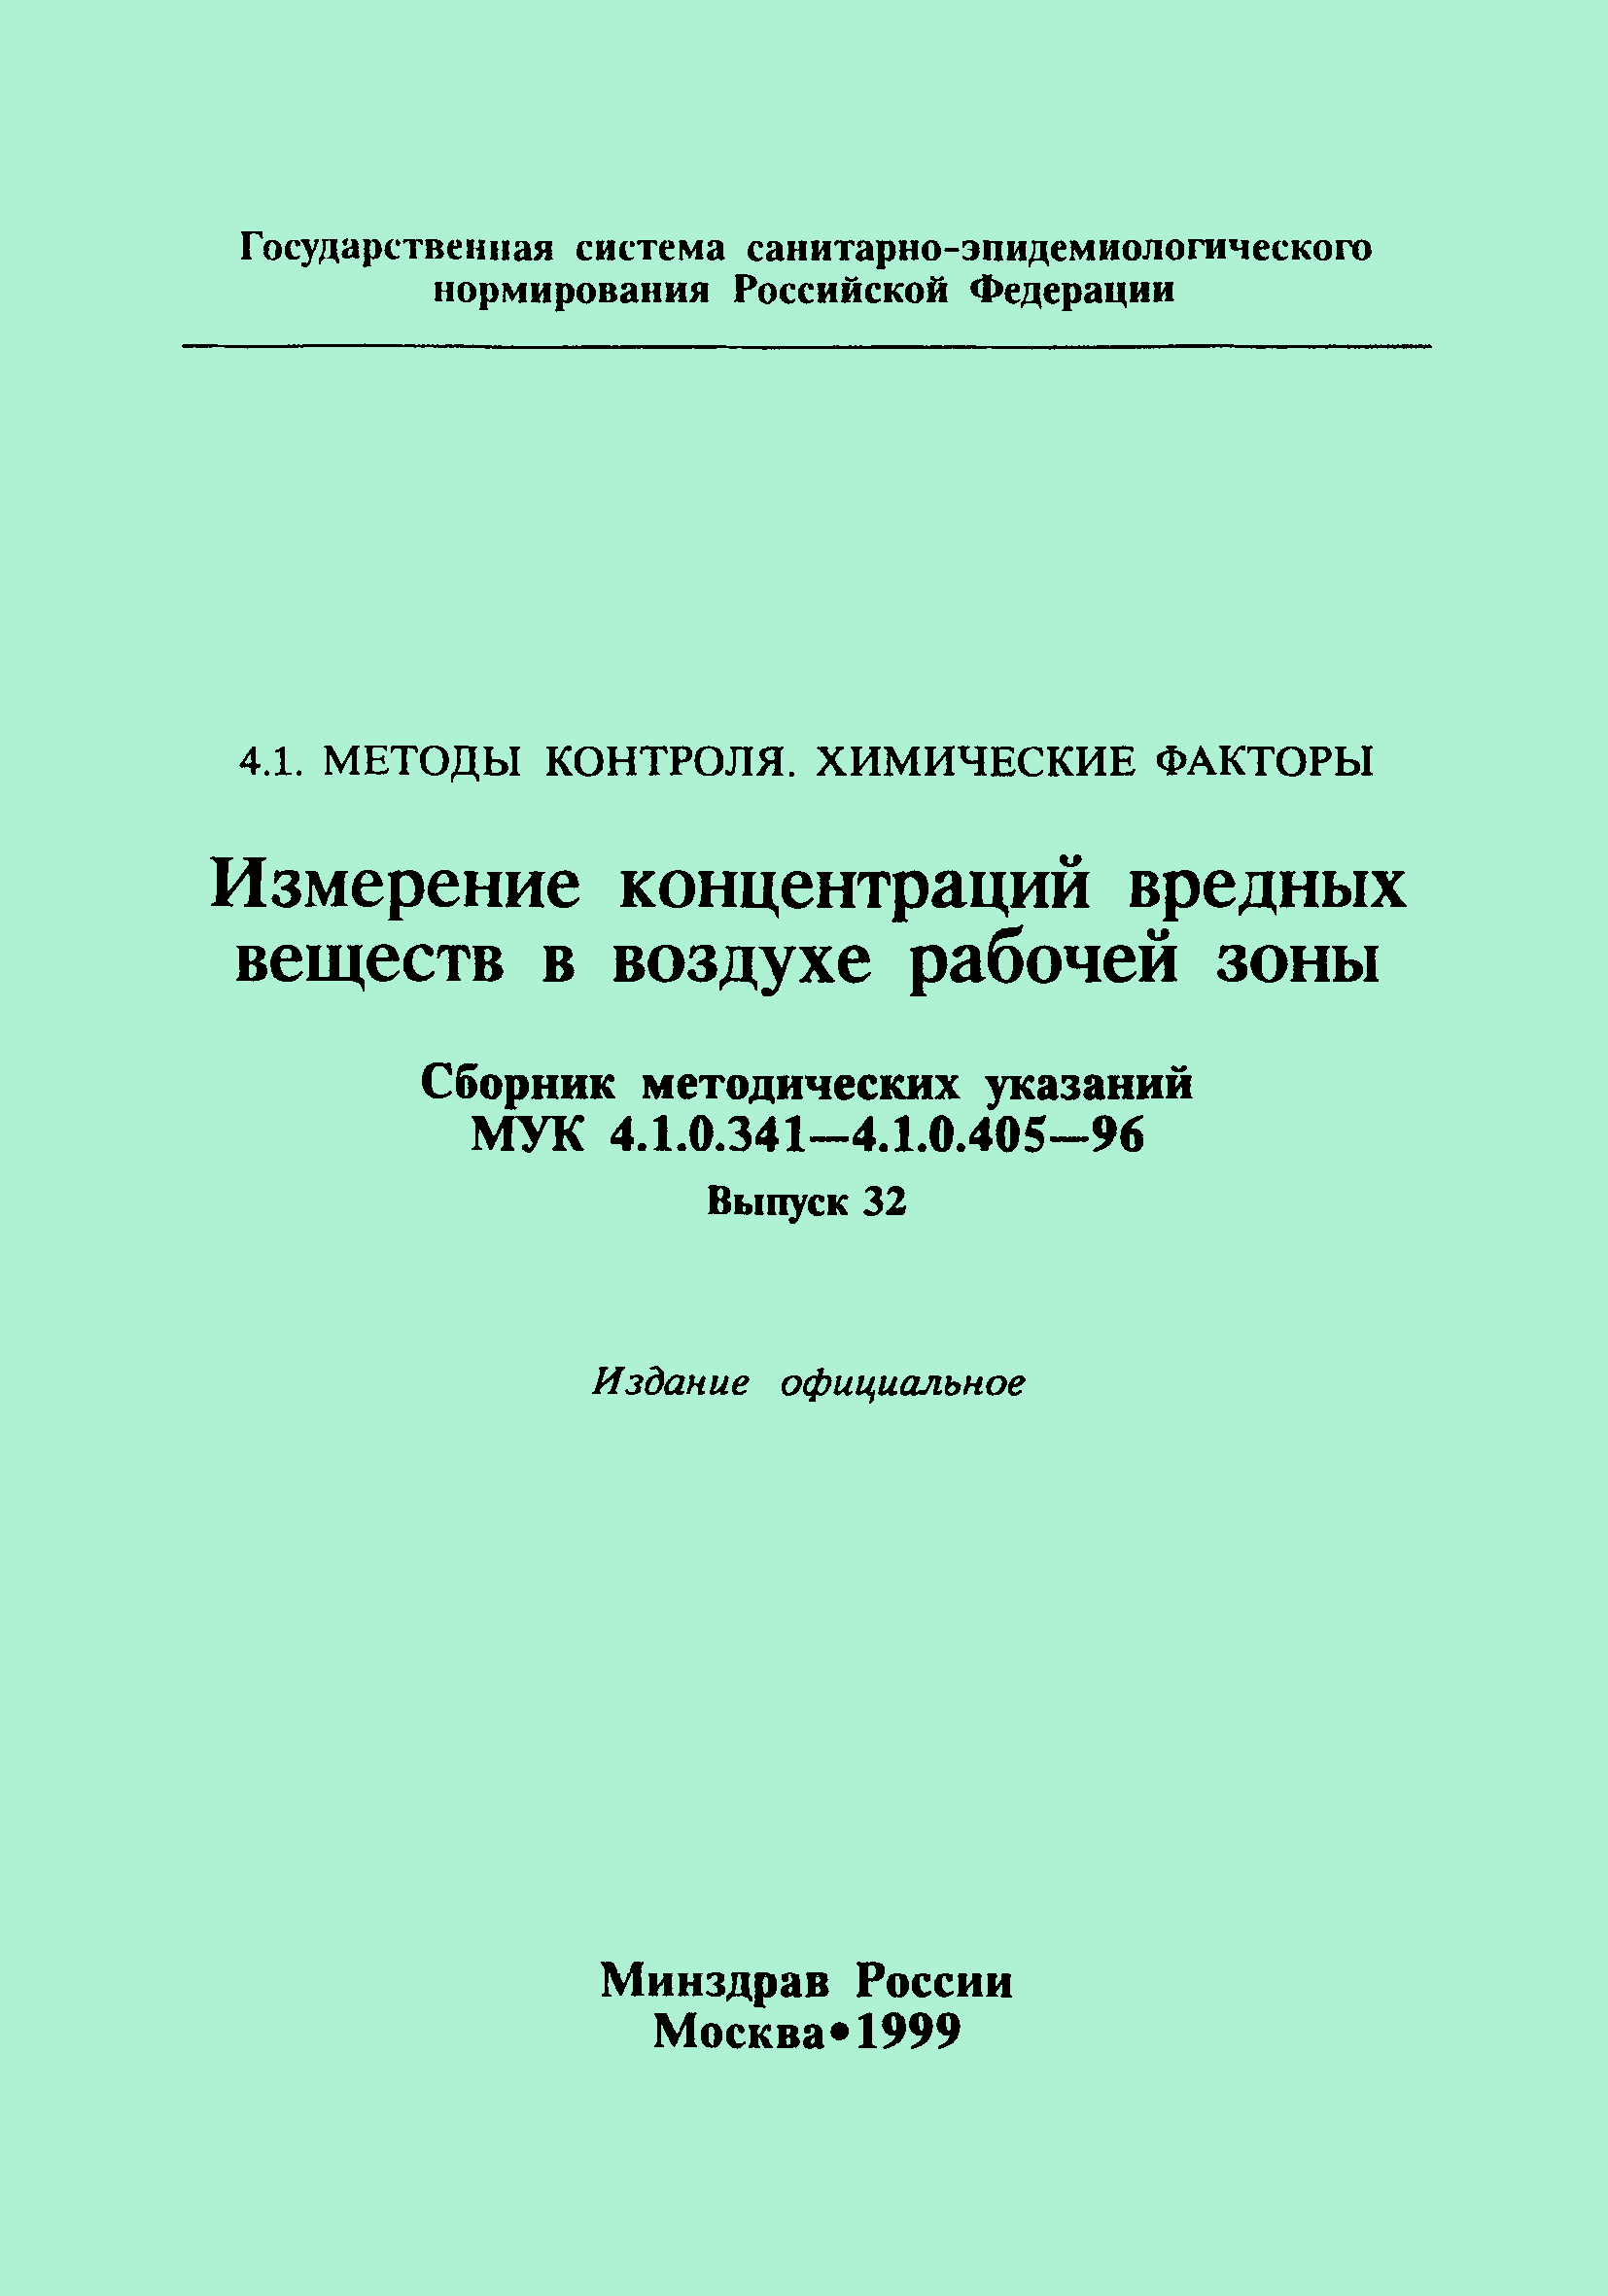 МУК 4.1.0.348-96